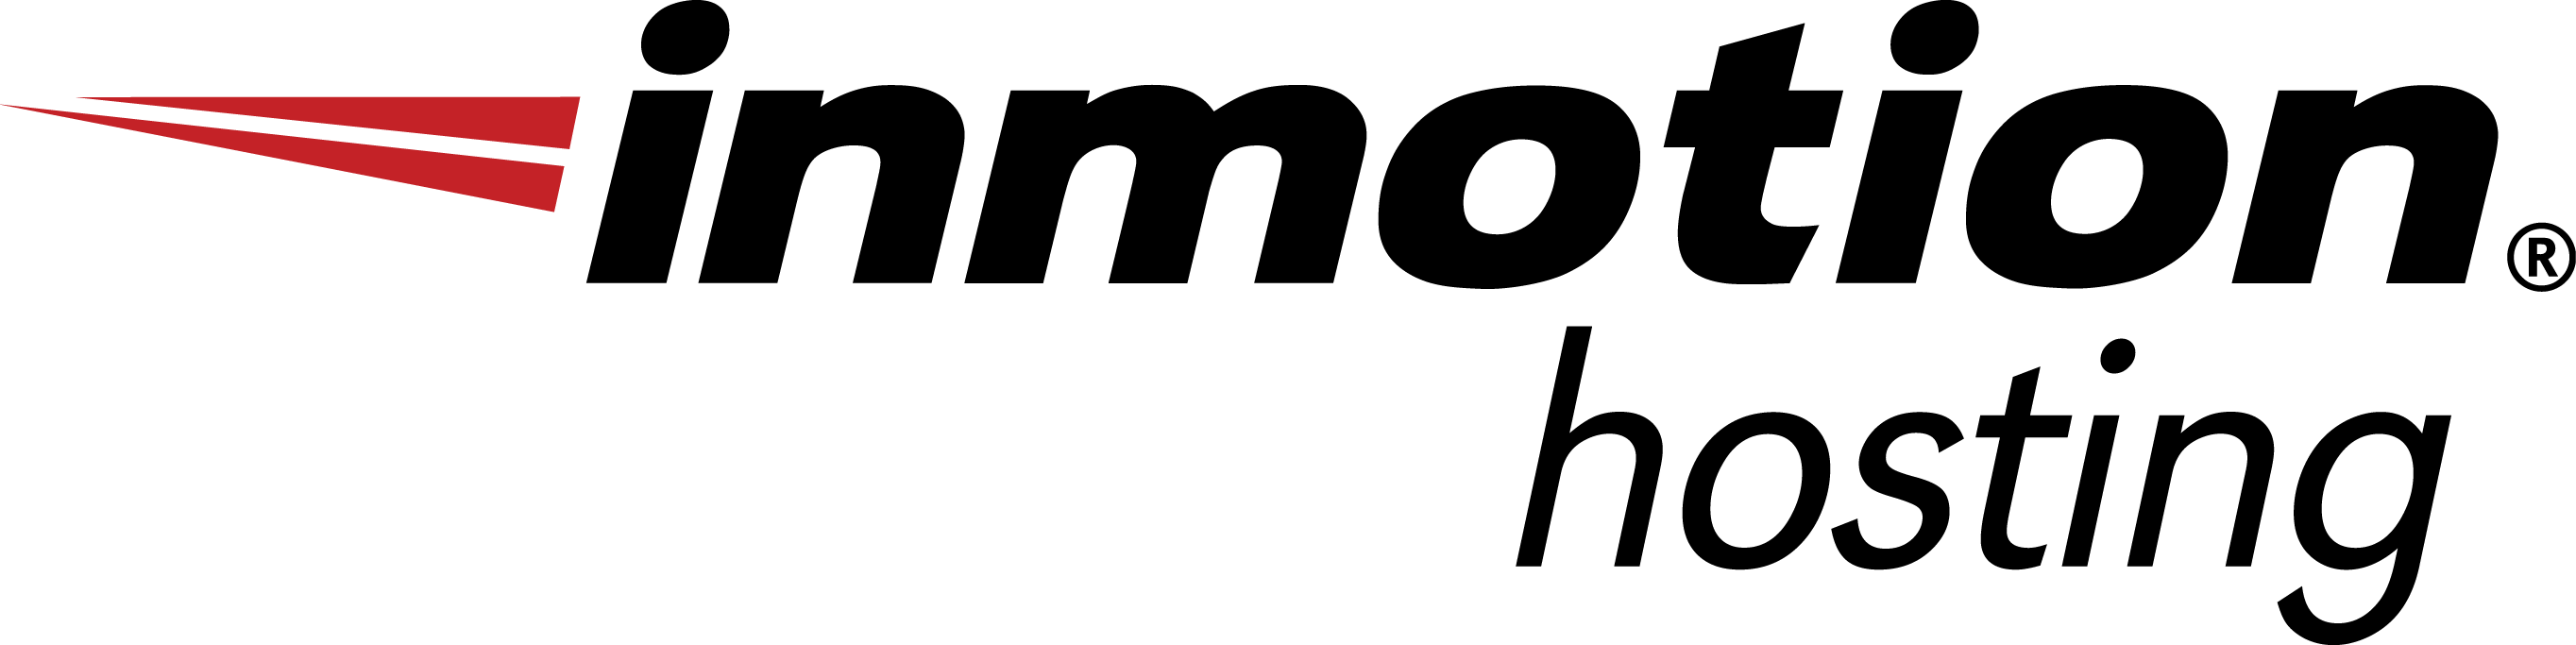 inmotion hosting logo image